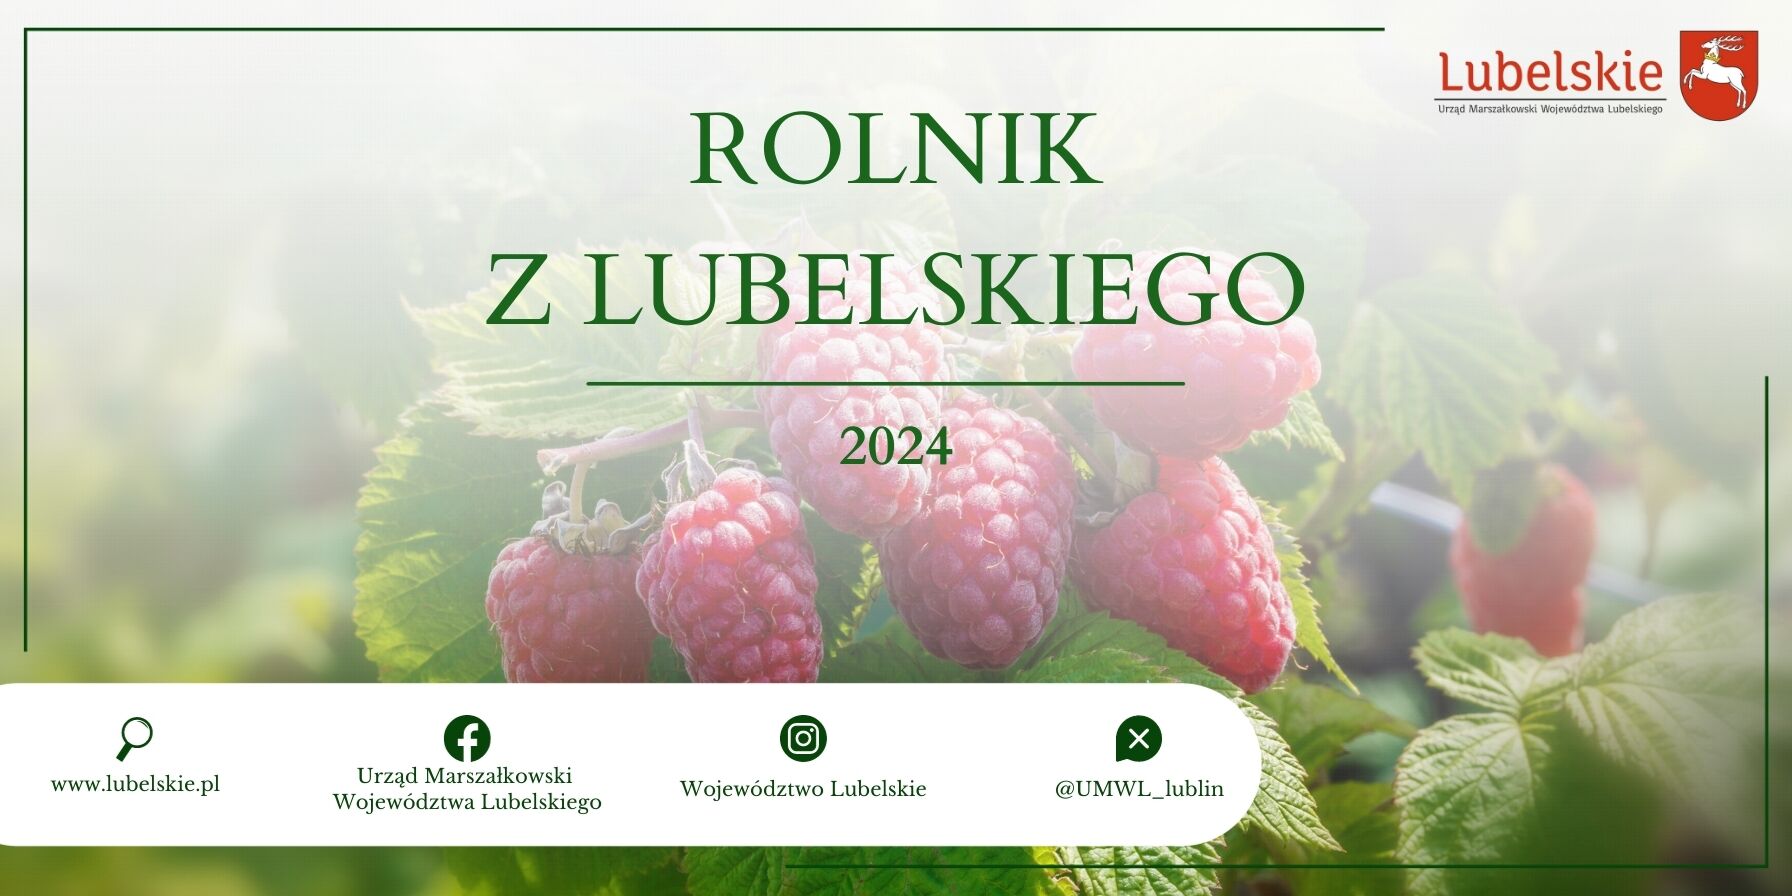 Obraz przedstawia grafikę promocyjną z napisem "Rolnik z Lubelskiego 2024" na tle rozmytych malin, z adresami stron internetowych i logo na dole.